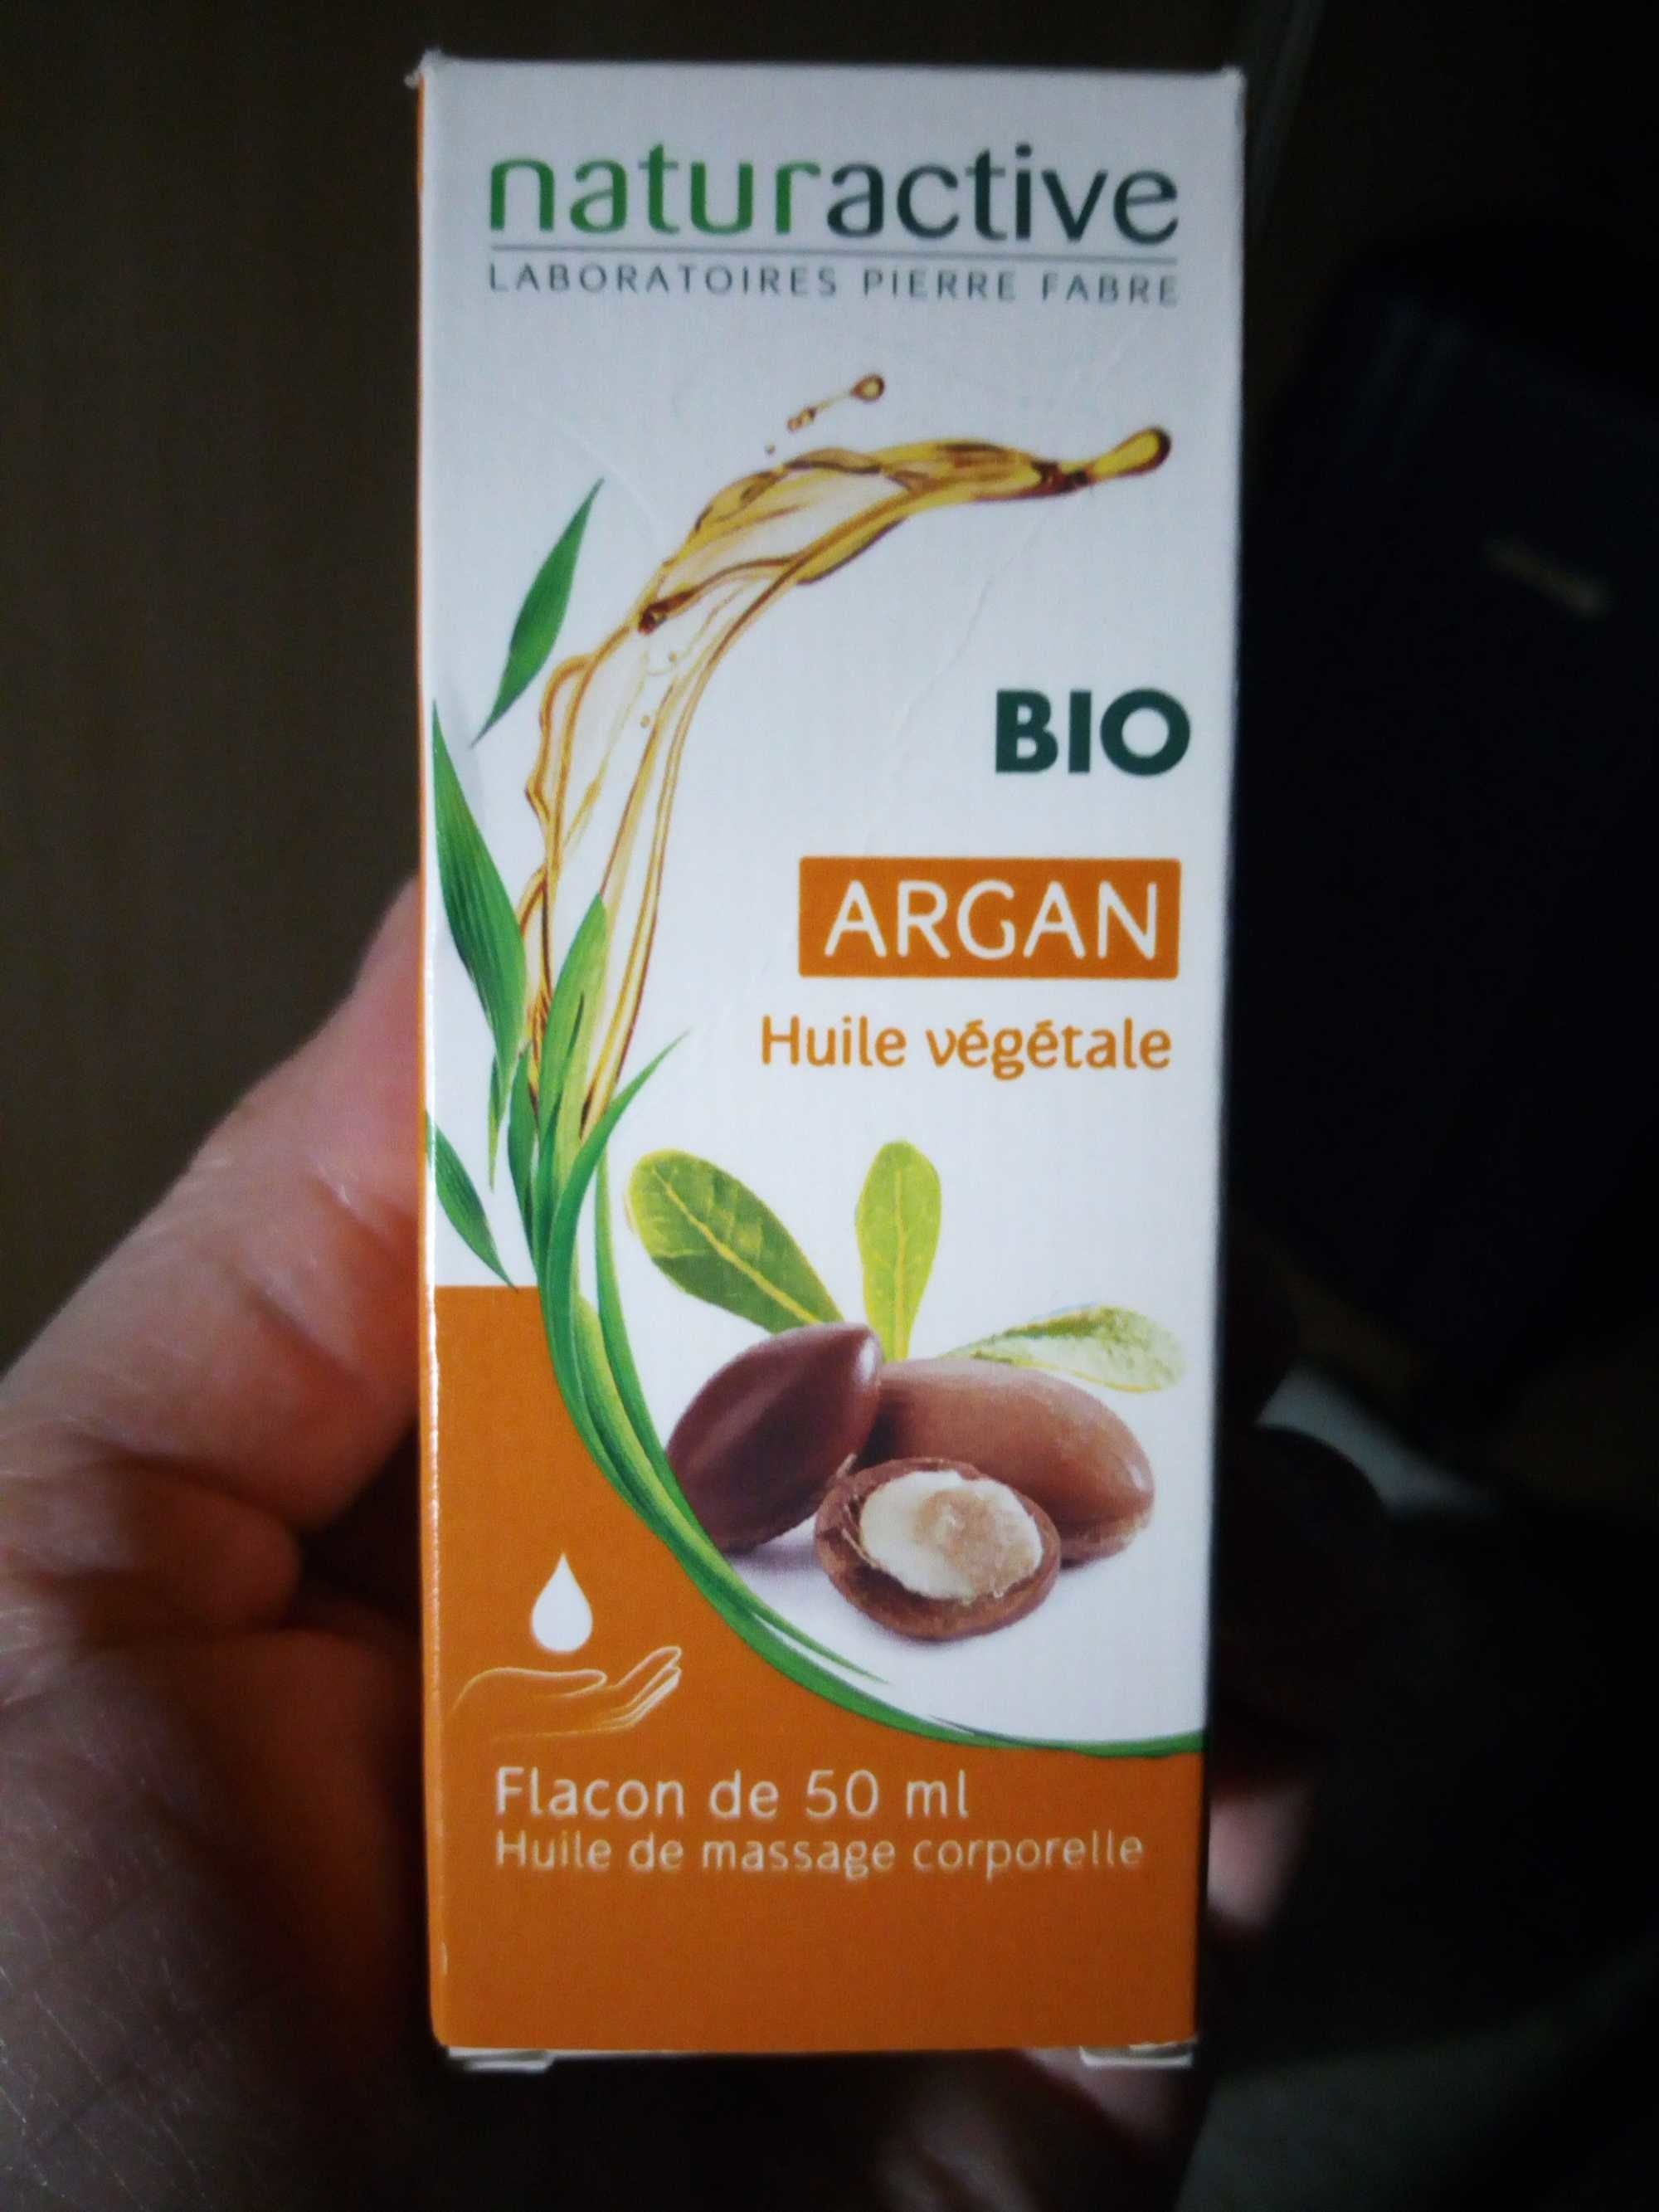 Bio Argan huile végétale - Produit - fr